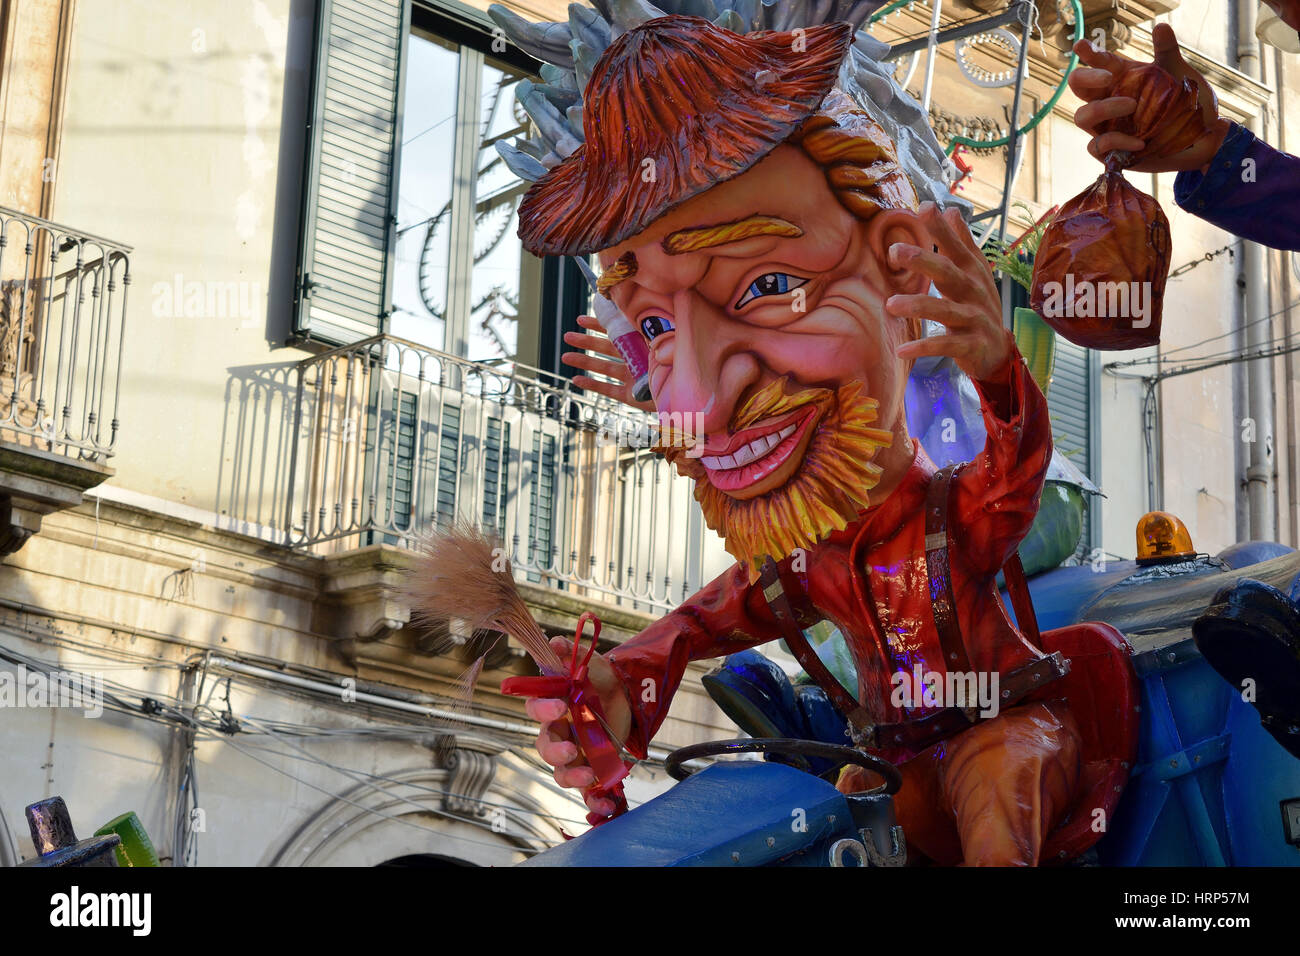 Acireale (CT), Italie - Février 28, 2017 : détail d'un char allégorique, représentant un homme avec robe et red hat, pendant le défilé du carnaval Banque D'Images